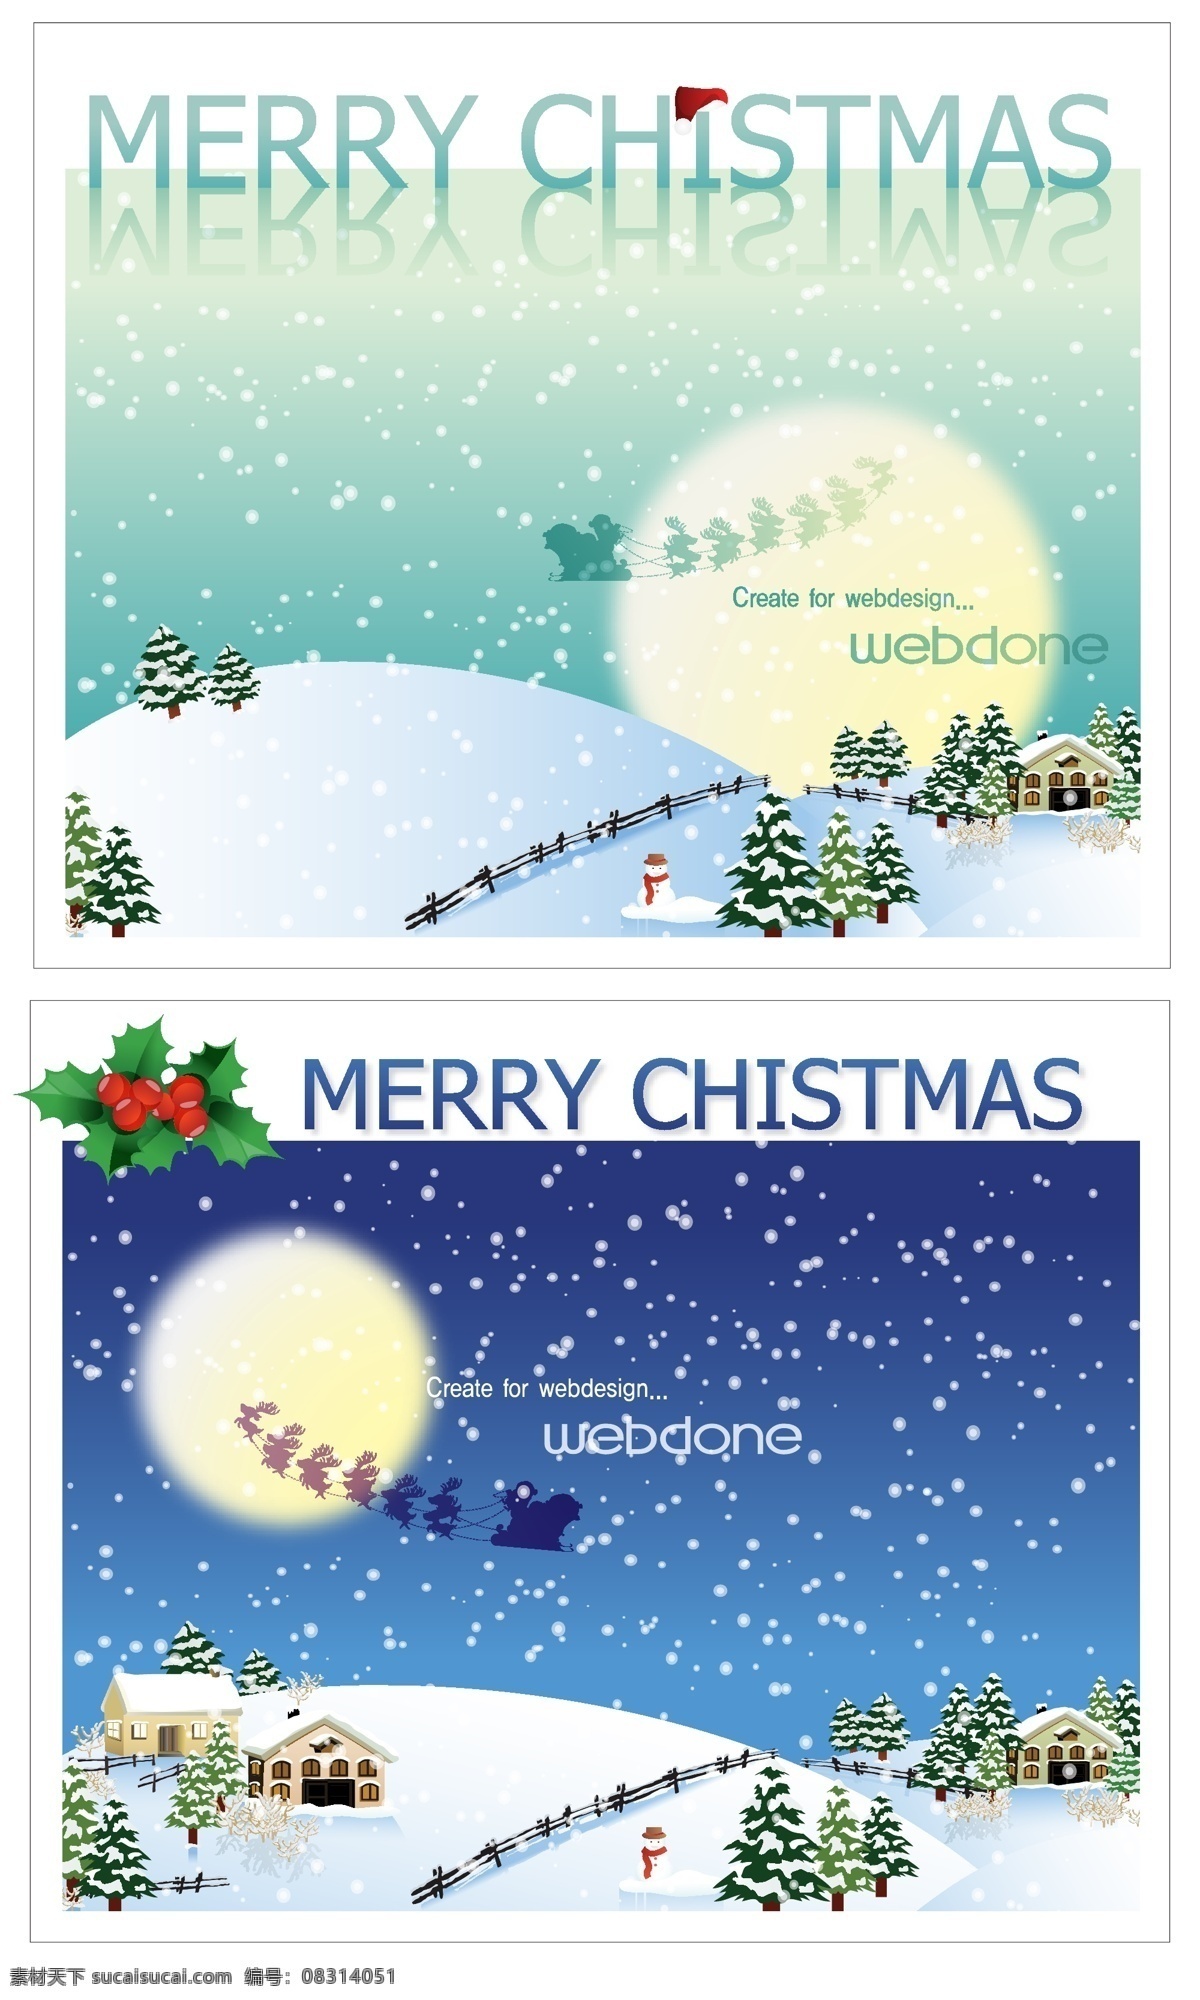 圣诞免费下载 圣诞 圣诞节 圣诞老人 圣诞礼物 圣诞树 星星 雪花 雪景 雪人 节日素材